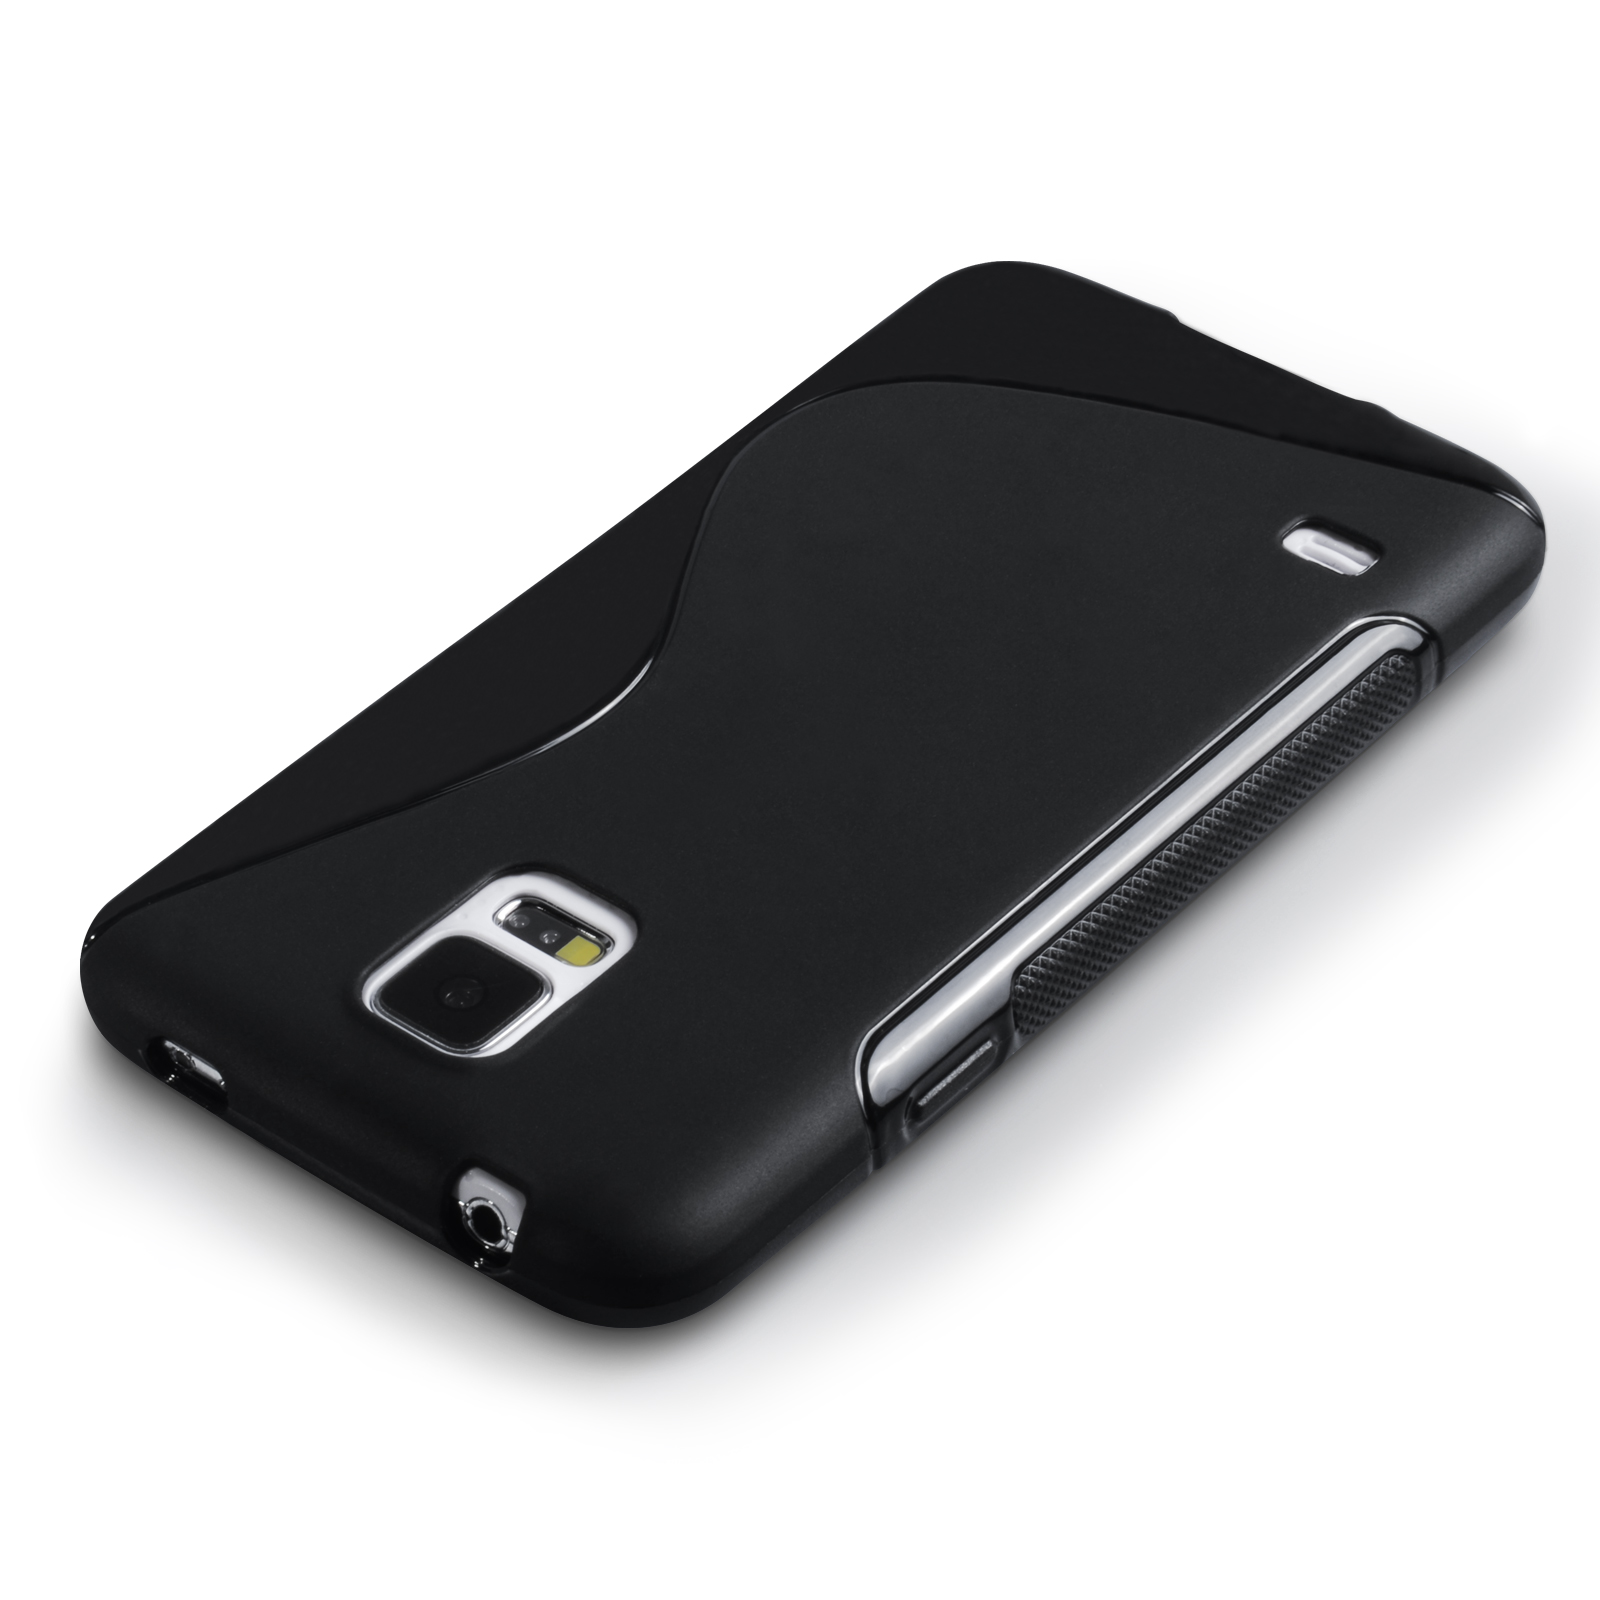 Caseflex Samsung Galaxy S5 Silicone Gel S-Line Case - Black